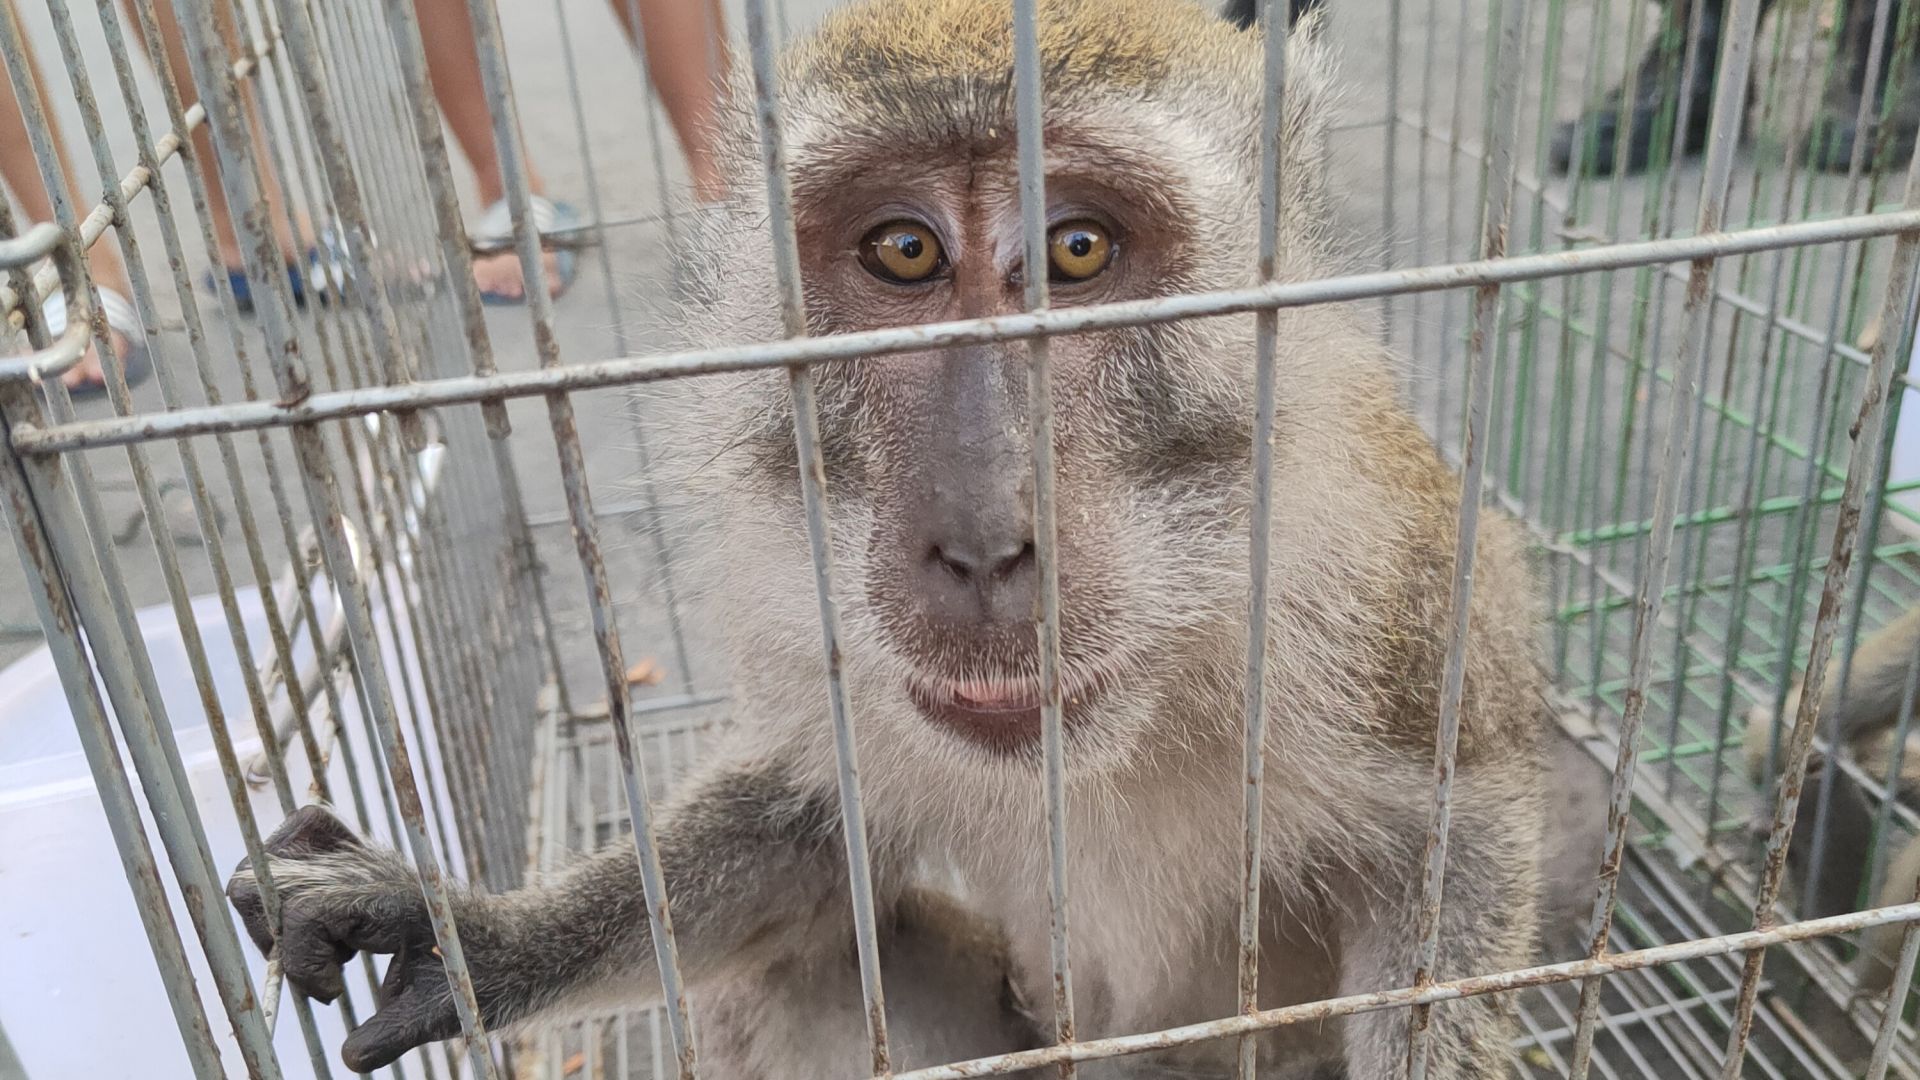 Makak-aben Mansur blev ramt af tre hagl, men er heldigvis i bedring efter sin behandling. Foto: Scorpion Foundations